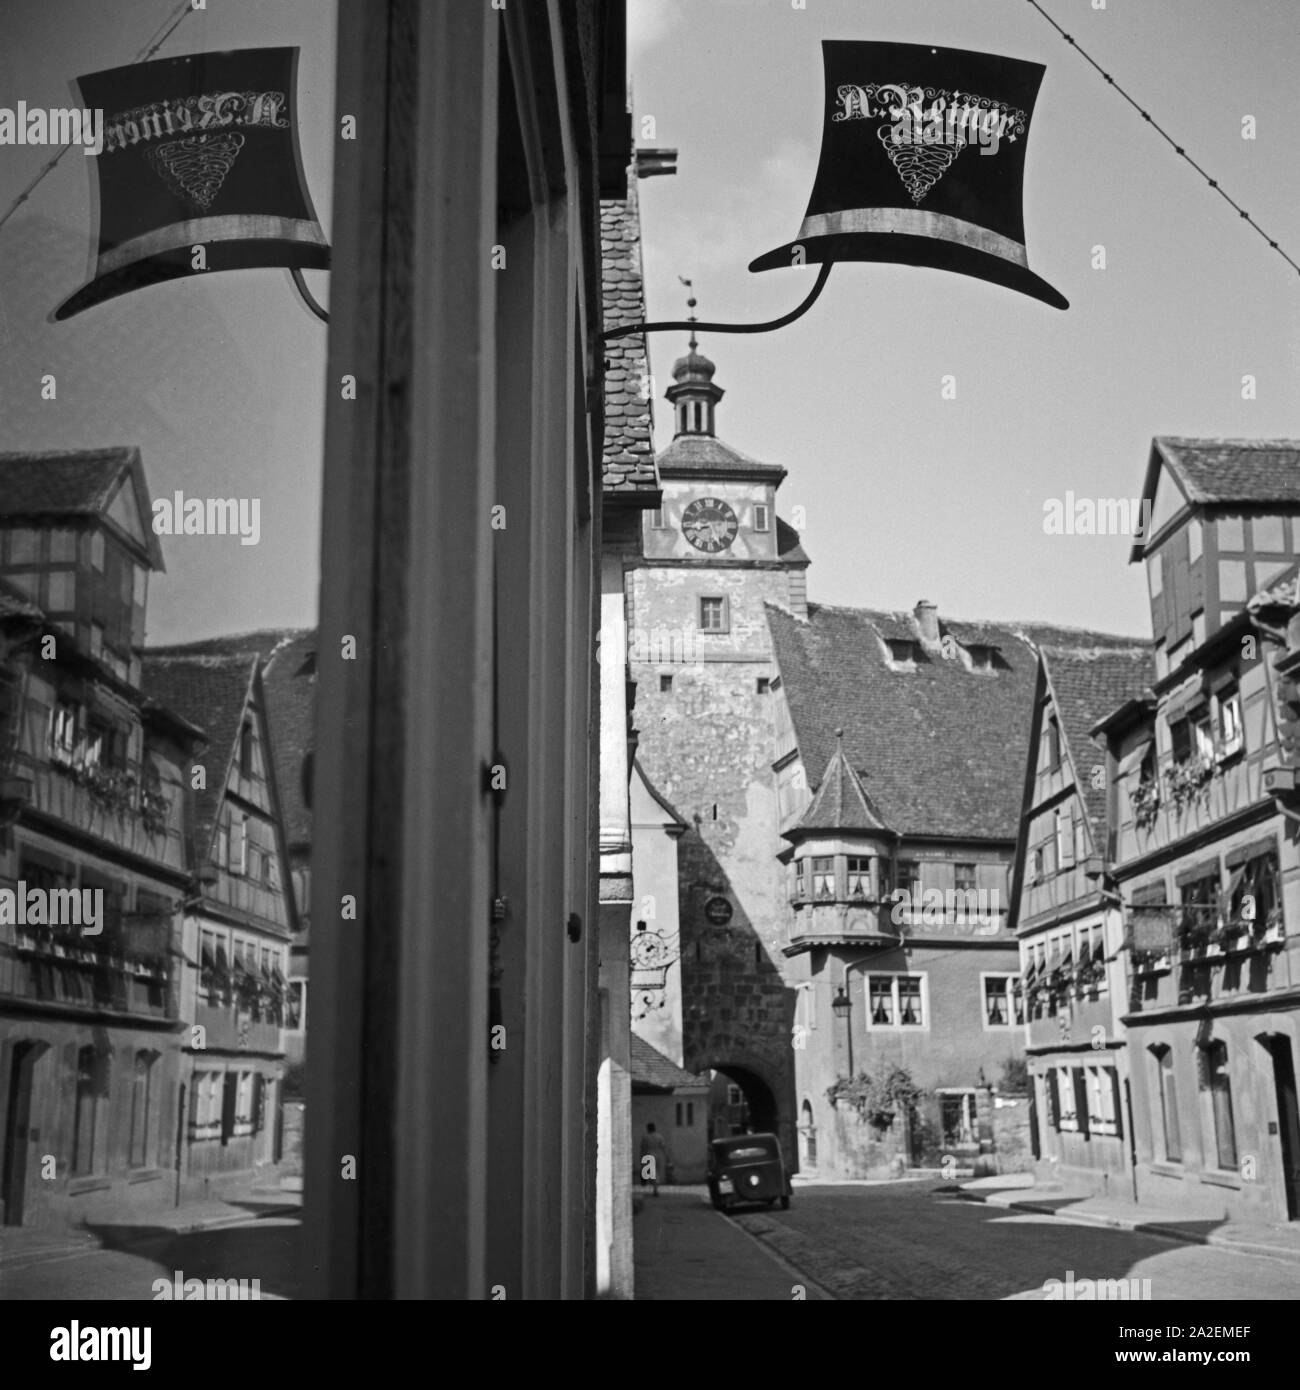 Weißer Turm mit dem hutgeschäft Reiner davor in Rothenburg o.d. Tauber, Deutschland 1930er Jahre. Weißen Turm mit Reiner's Hut shop Vor in Rothenburg o.d. Tauber, Deutsch 1930. Stockfoto